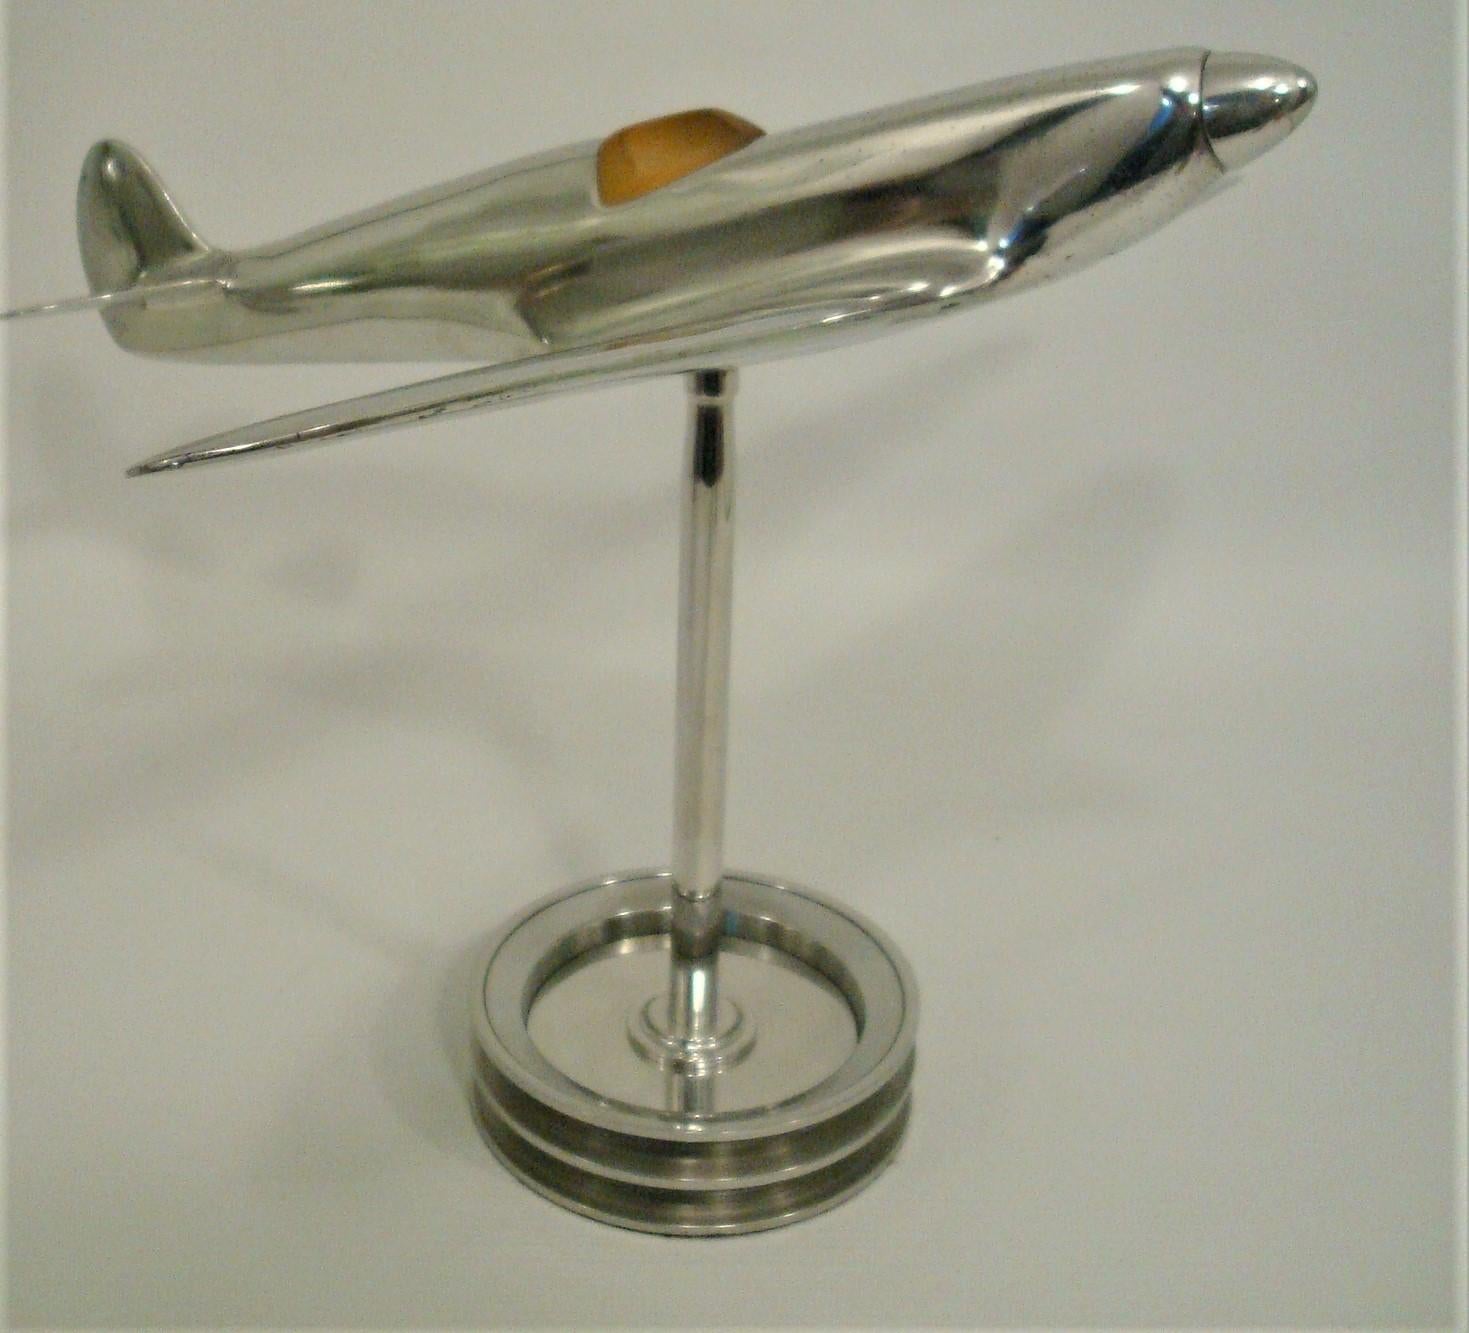 brass spitfire model